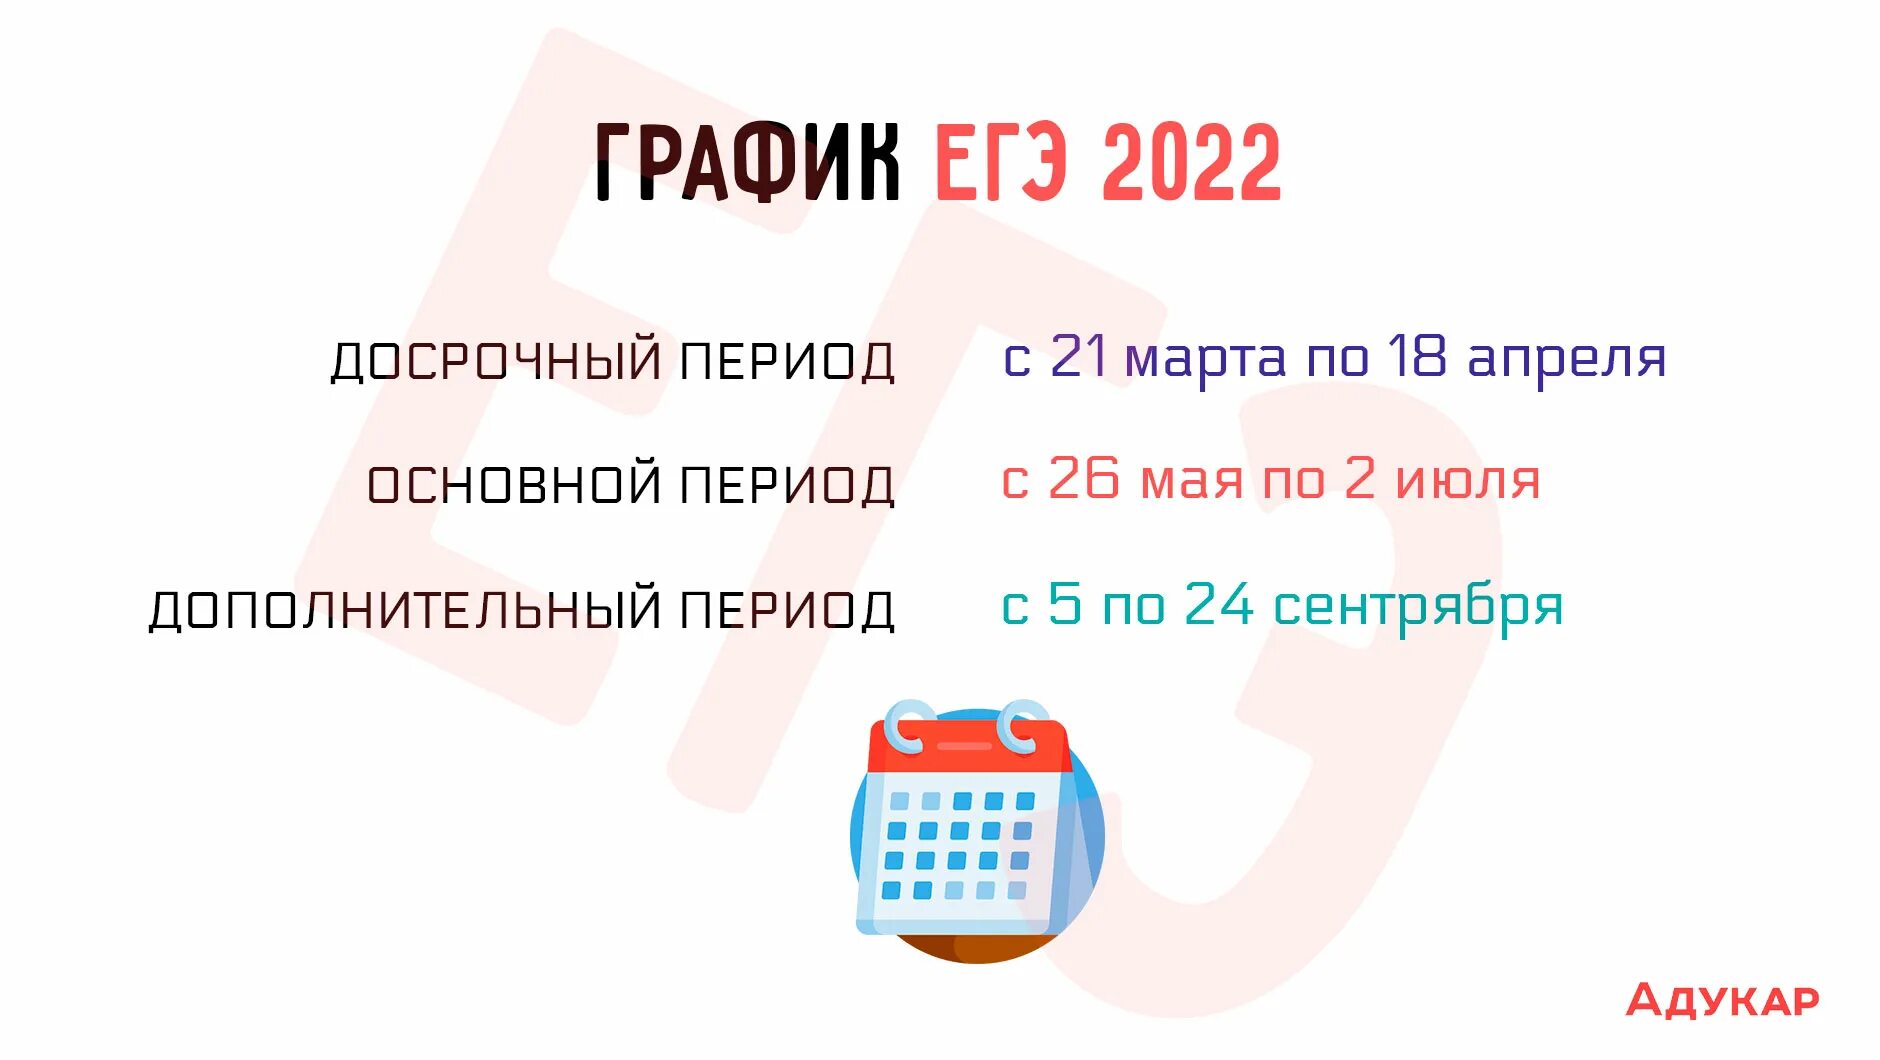 Досрочный егэ по химии 2024. Досрочный период ЕГЭ 2022. Даты ЕГЭ 2022. ЕГЭ 2022 досрочный период даты. Даты досрочного ЕГЭ 2022.